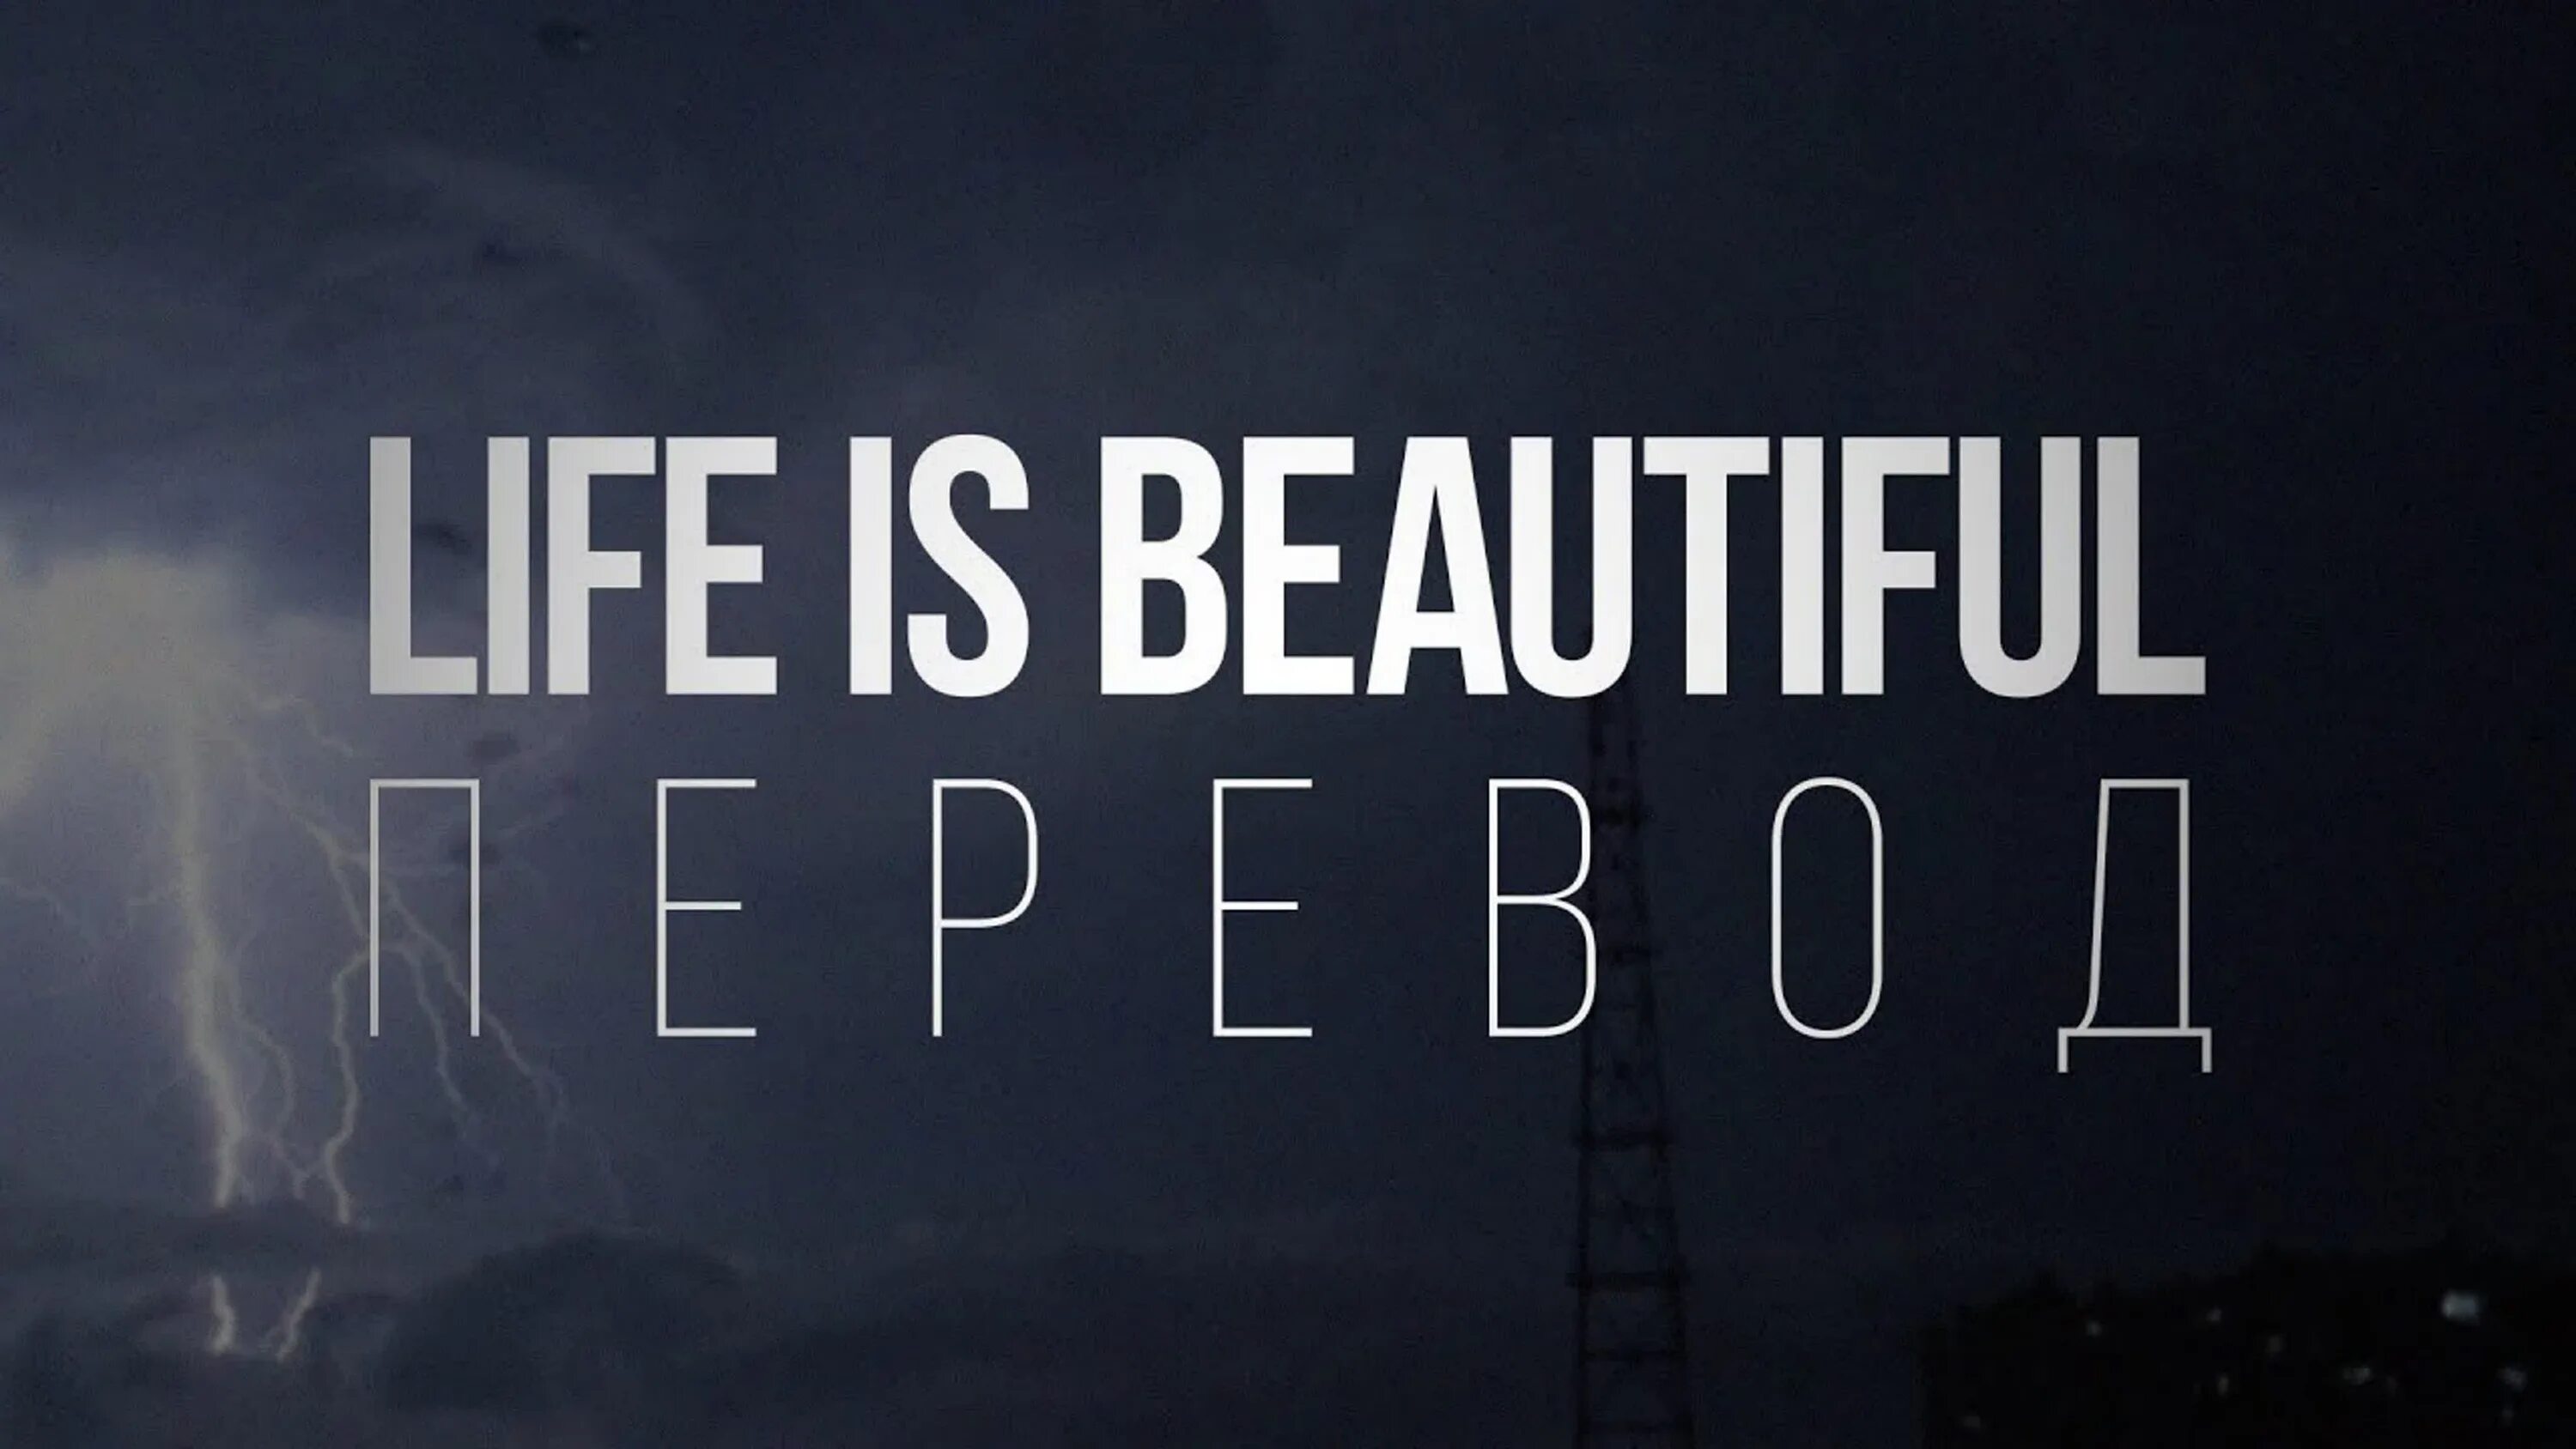 Life is beautiful перевод. Lil Peep Life. Лил пип лайф ИС бьютифул. Надпись Life is beautiful Lil Peep. Переведи is beautiful